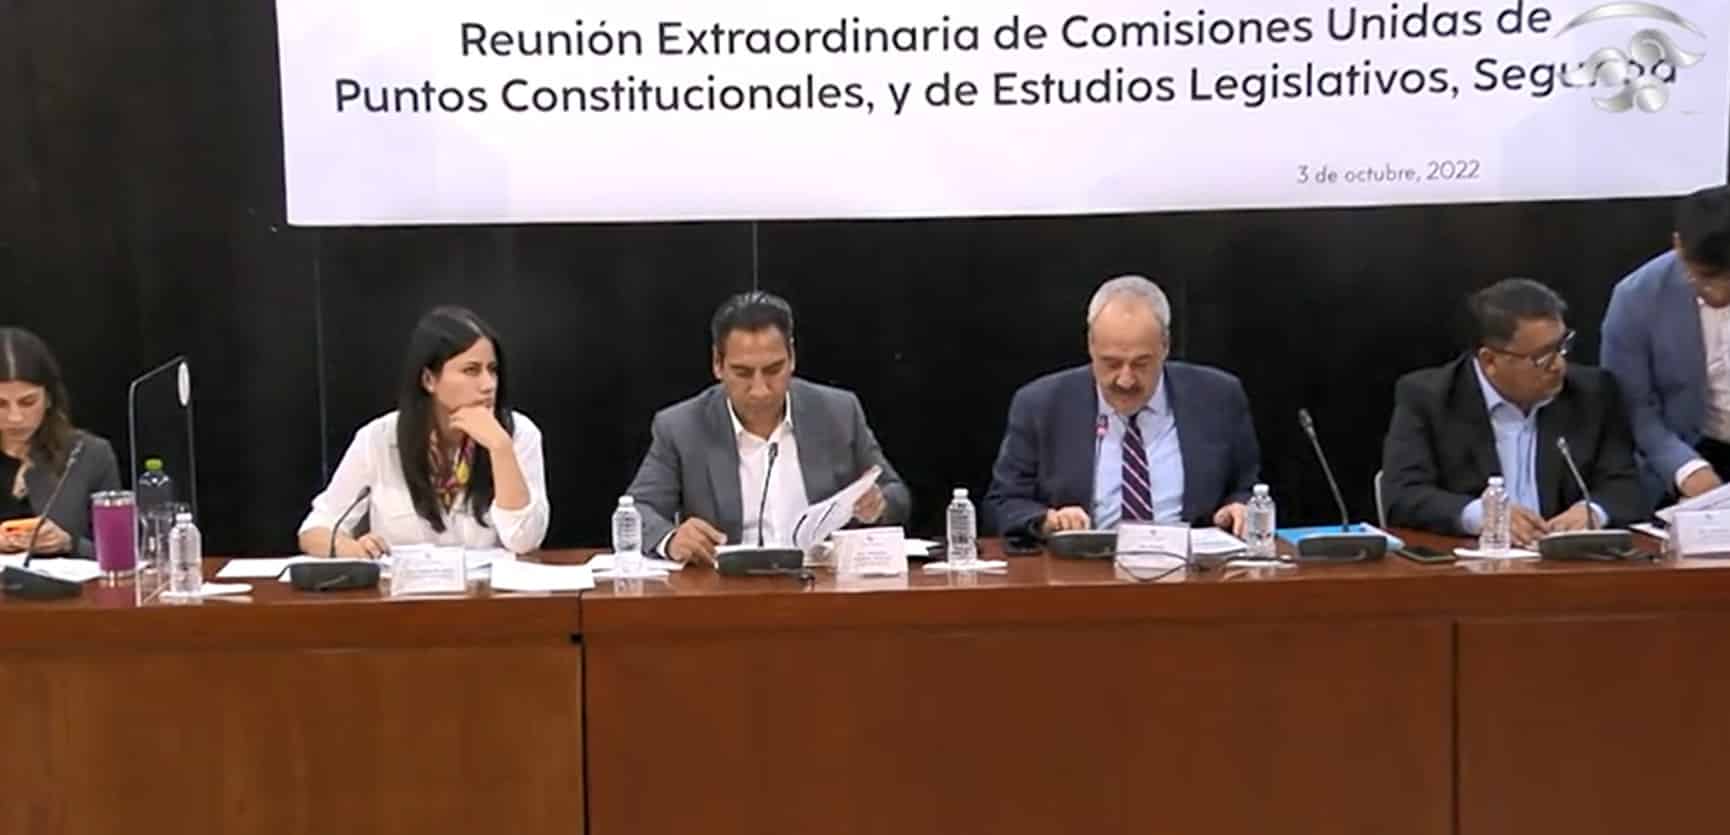 Reunión de las comisiones unidas de Puntos Constitucionales y de Estudios Legislativos Segunda, 3 de octubre de 2022 (Twitter: @senadomexicano)